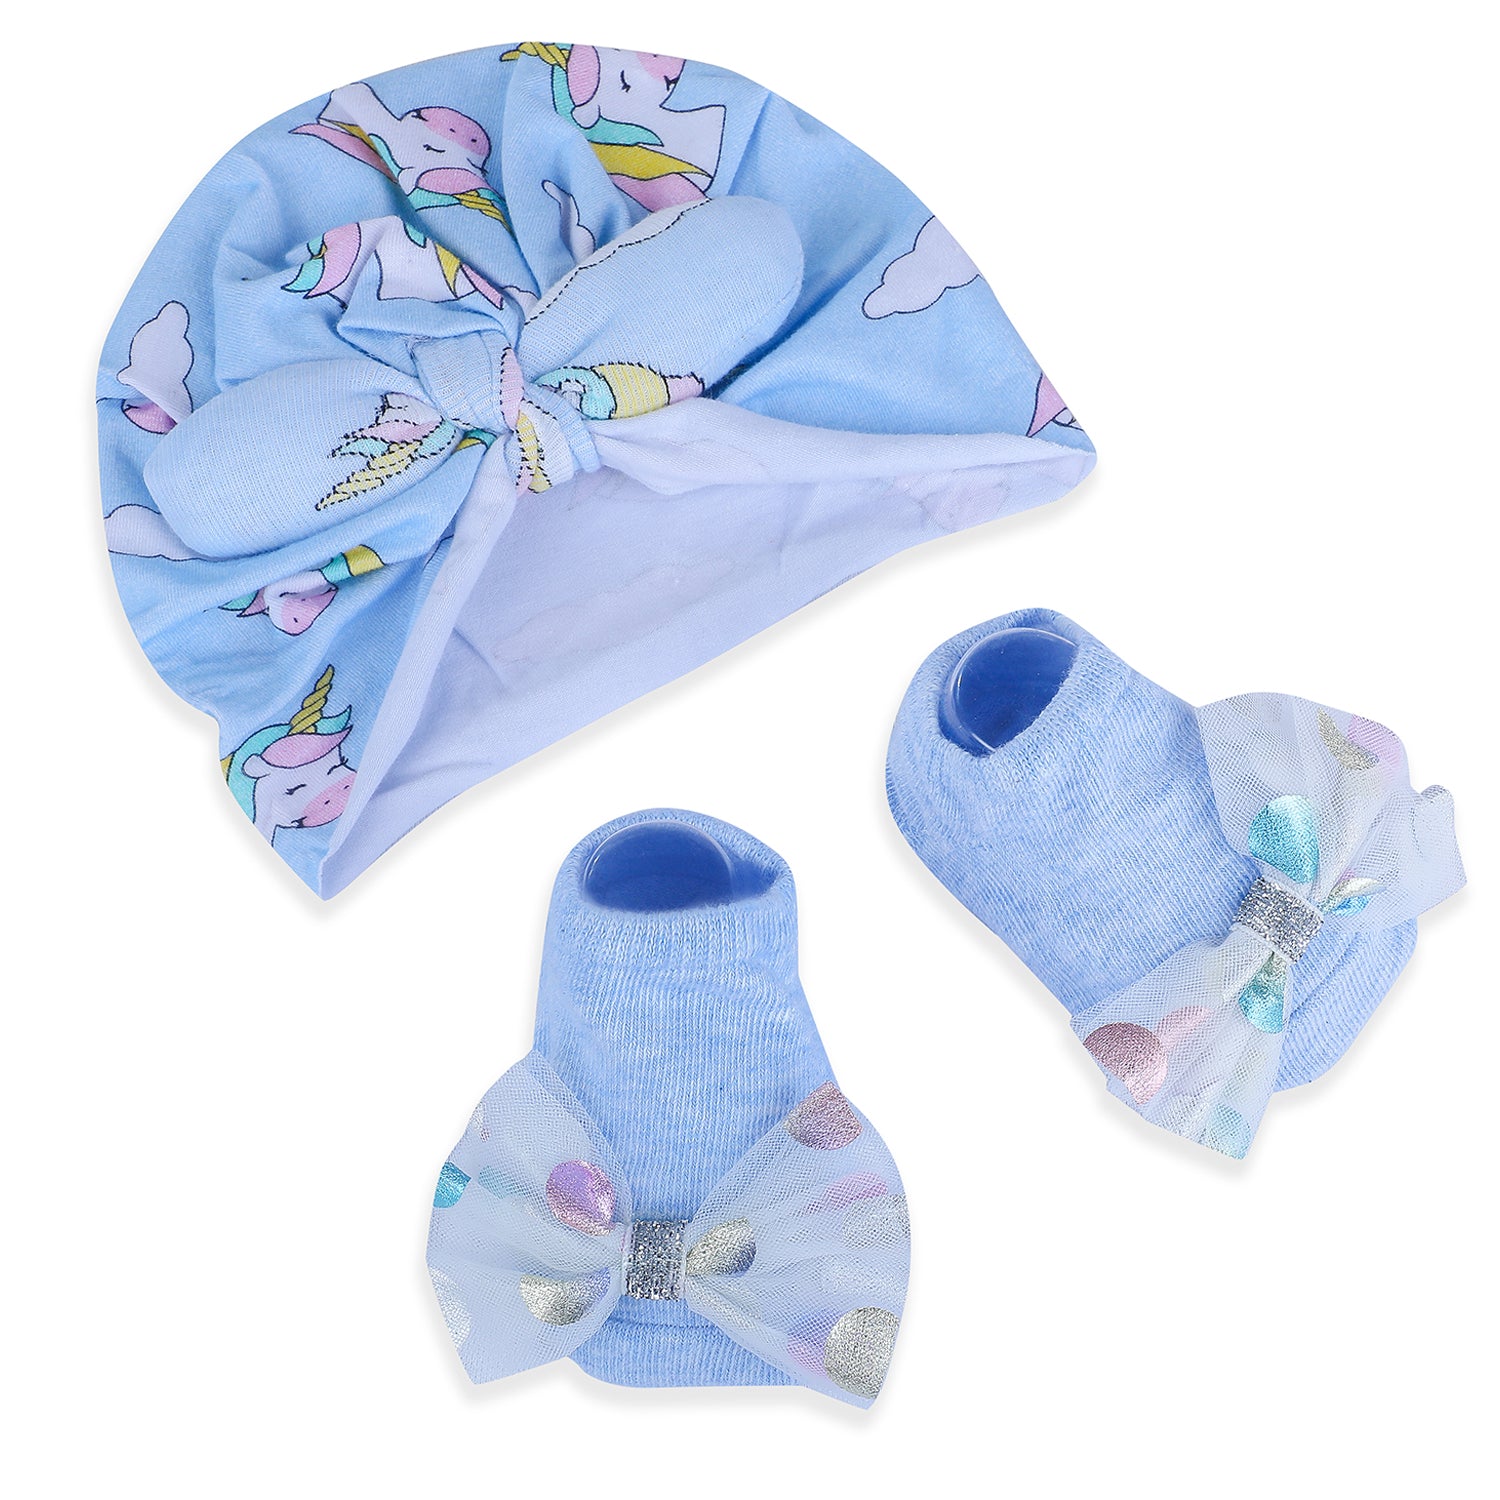 Baby Moo Unicorn Shiny Bow Matching Cap And Socks Set - Blue - Baby Moo